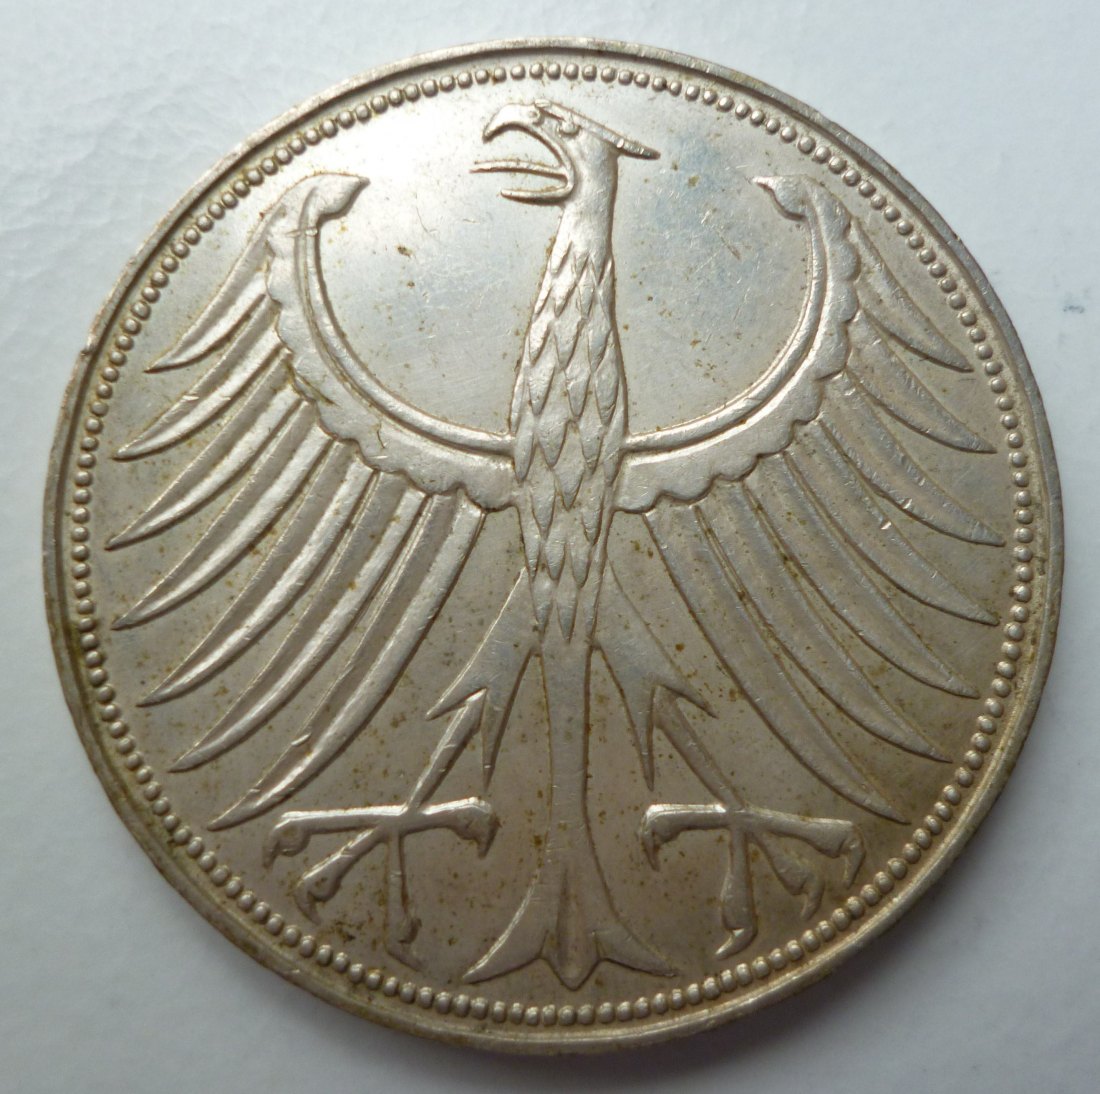  Deutschland 5 DM 1957 G Heiermann Silber   